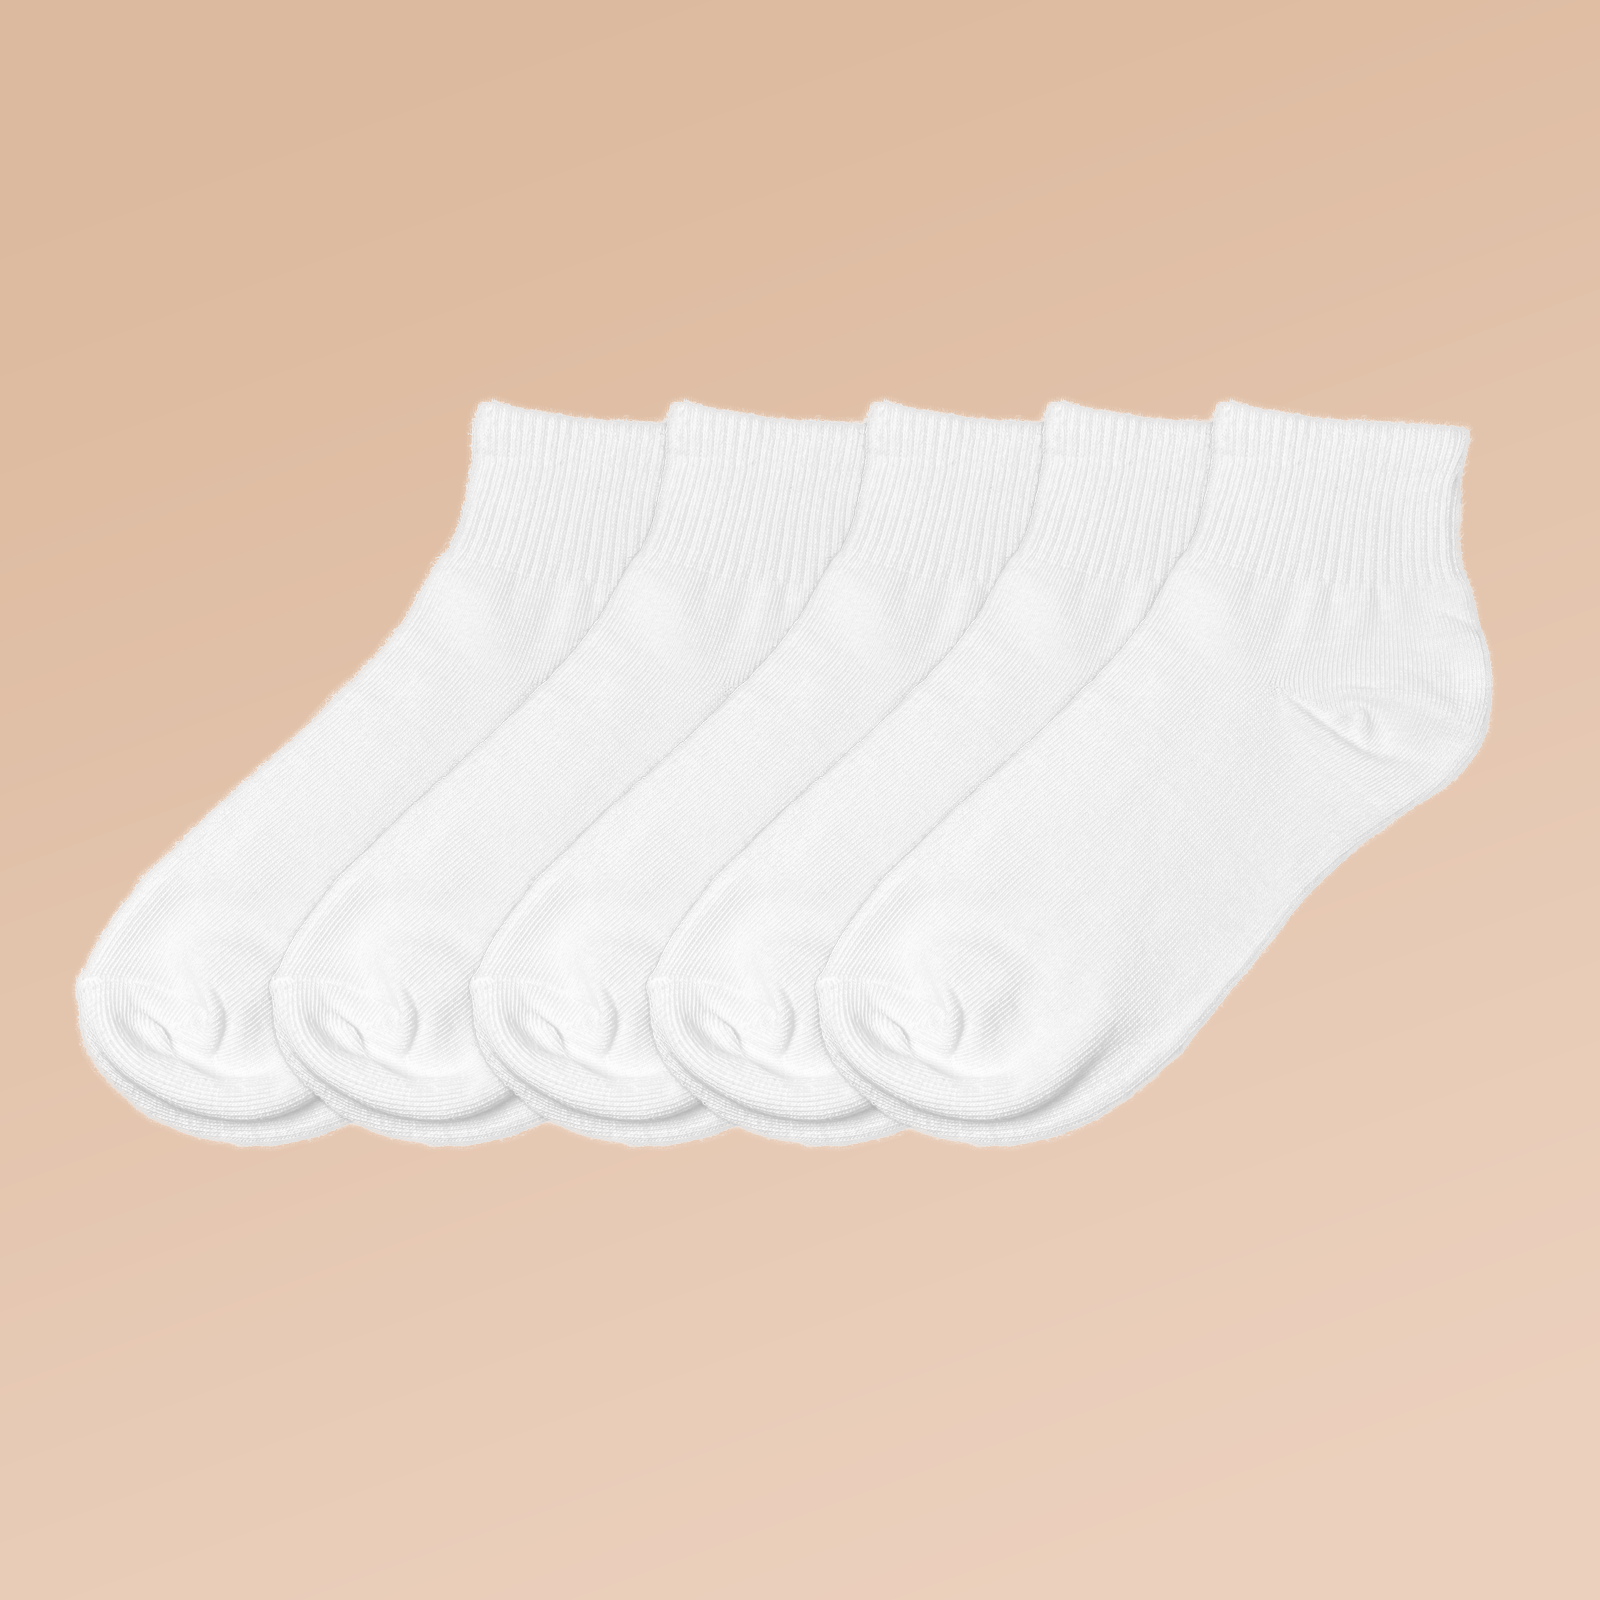 Womens White Socks.